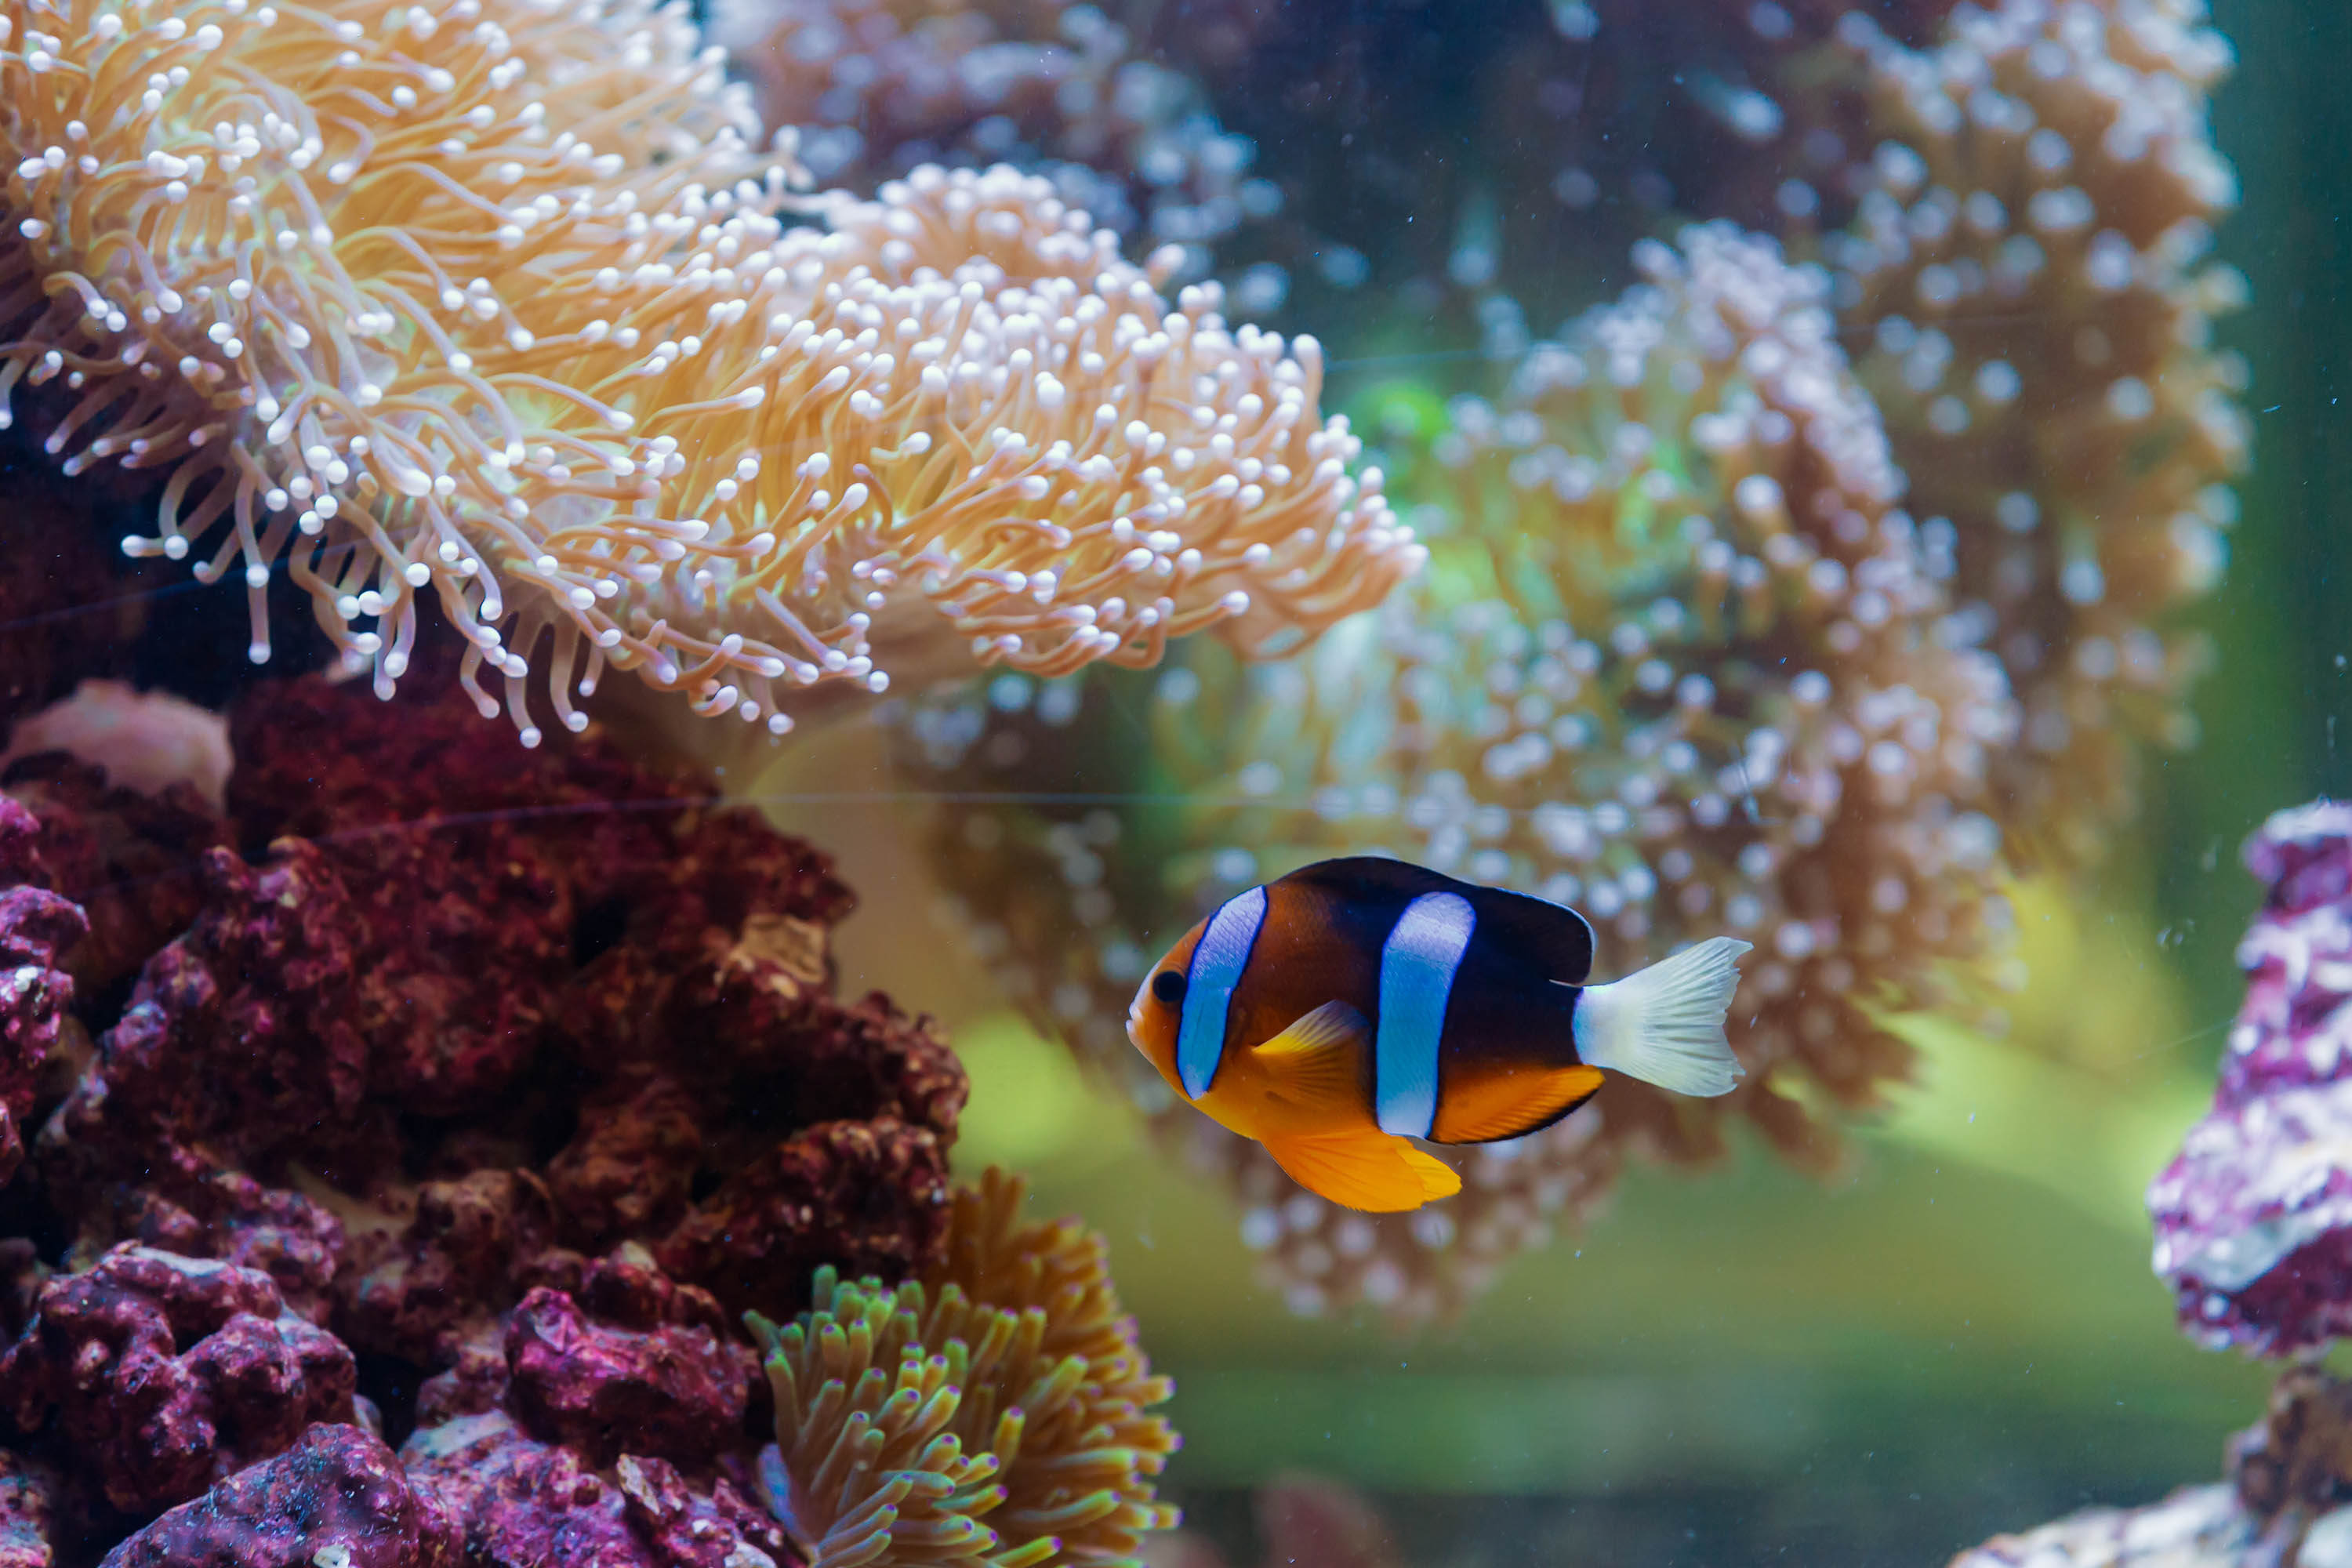 سمكة المهرج ذات اللون البرتقالي والأسود والأبيض تسبح بجانب الشعاب المرجانية الجميلة في ناشونال أكواريوم